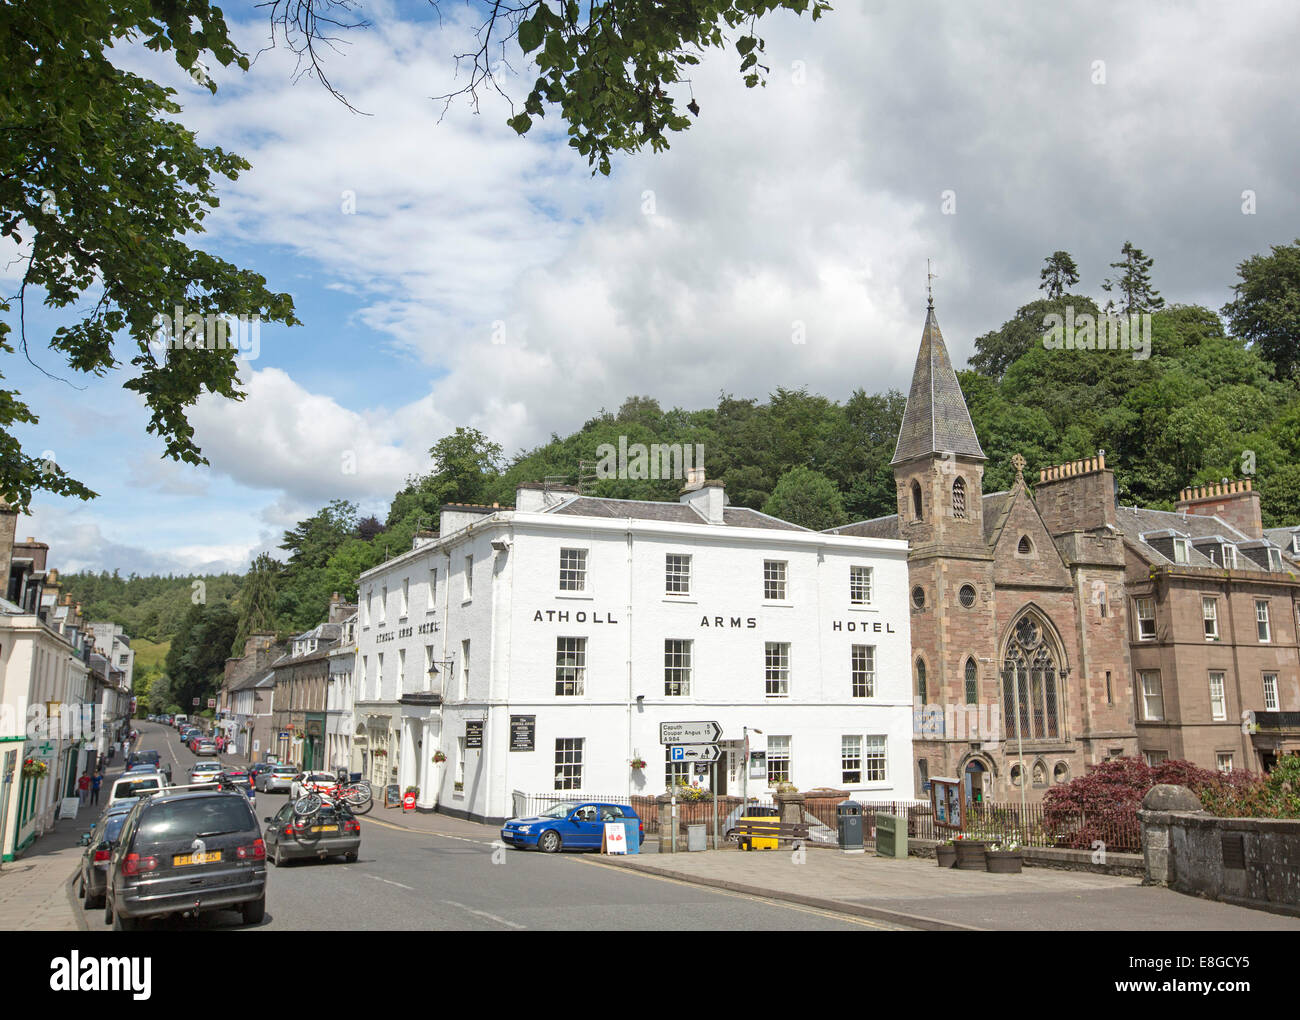 Rue principale de la ville écossaise de Dunkeld avec 19e siècle historique Atholl Arms Hotel et l'ancienne église en premier plan Banque D'Images